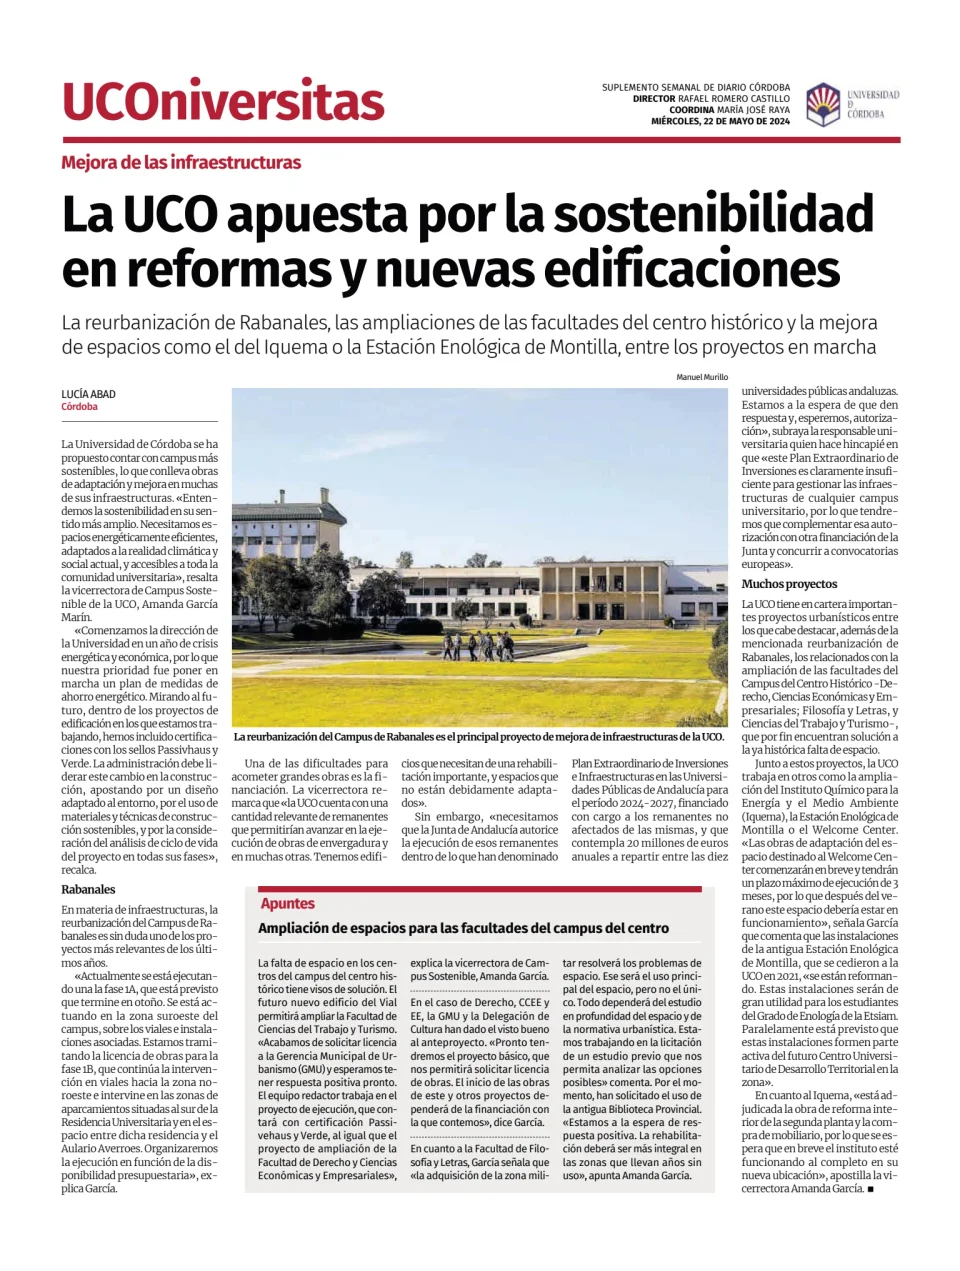 Diario Córdoba - Universitas